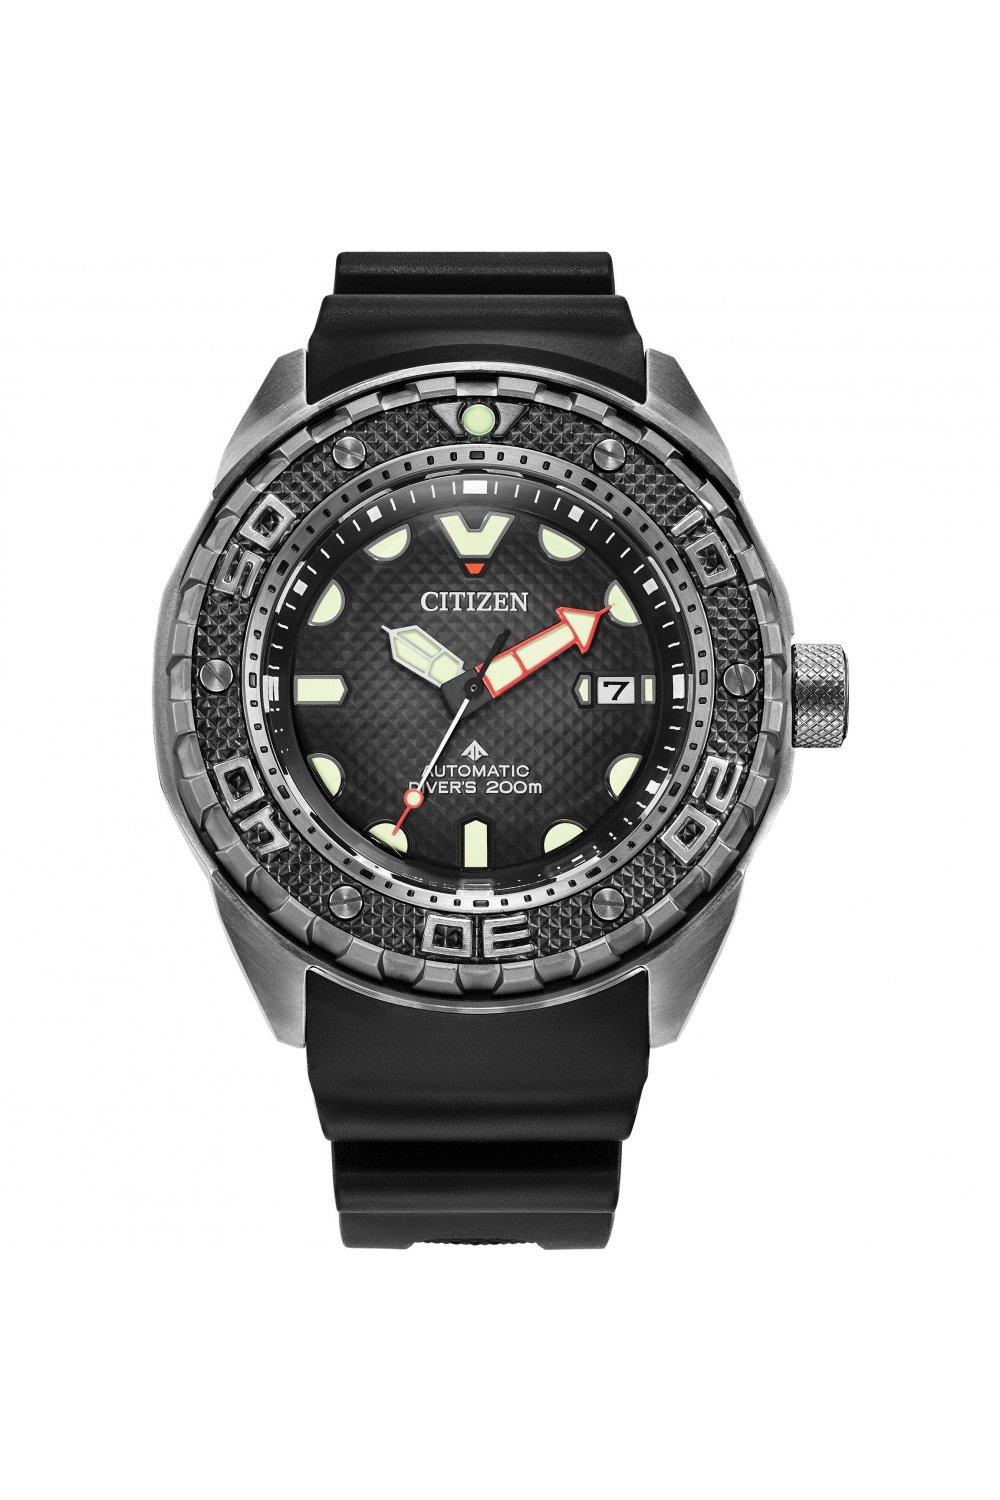 Citizen Automatic Promaster Dive Titanium Classic Watch NB6005-05L ...